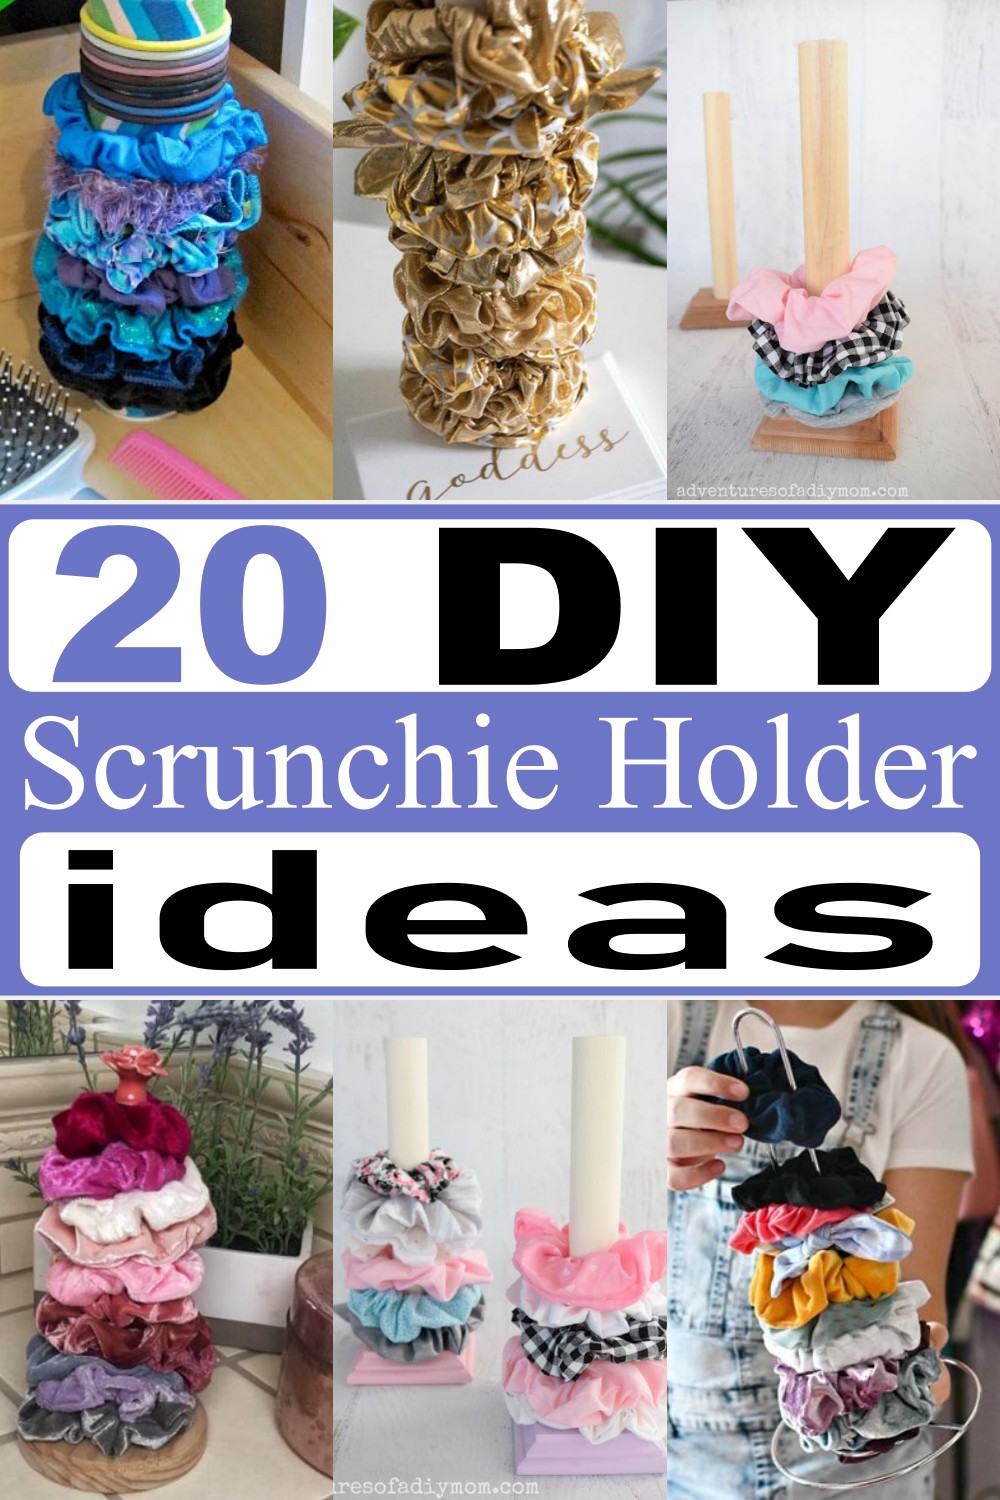 20 DIY Scrunchie Holder